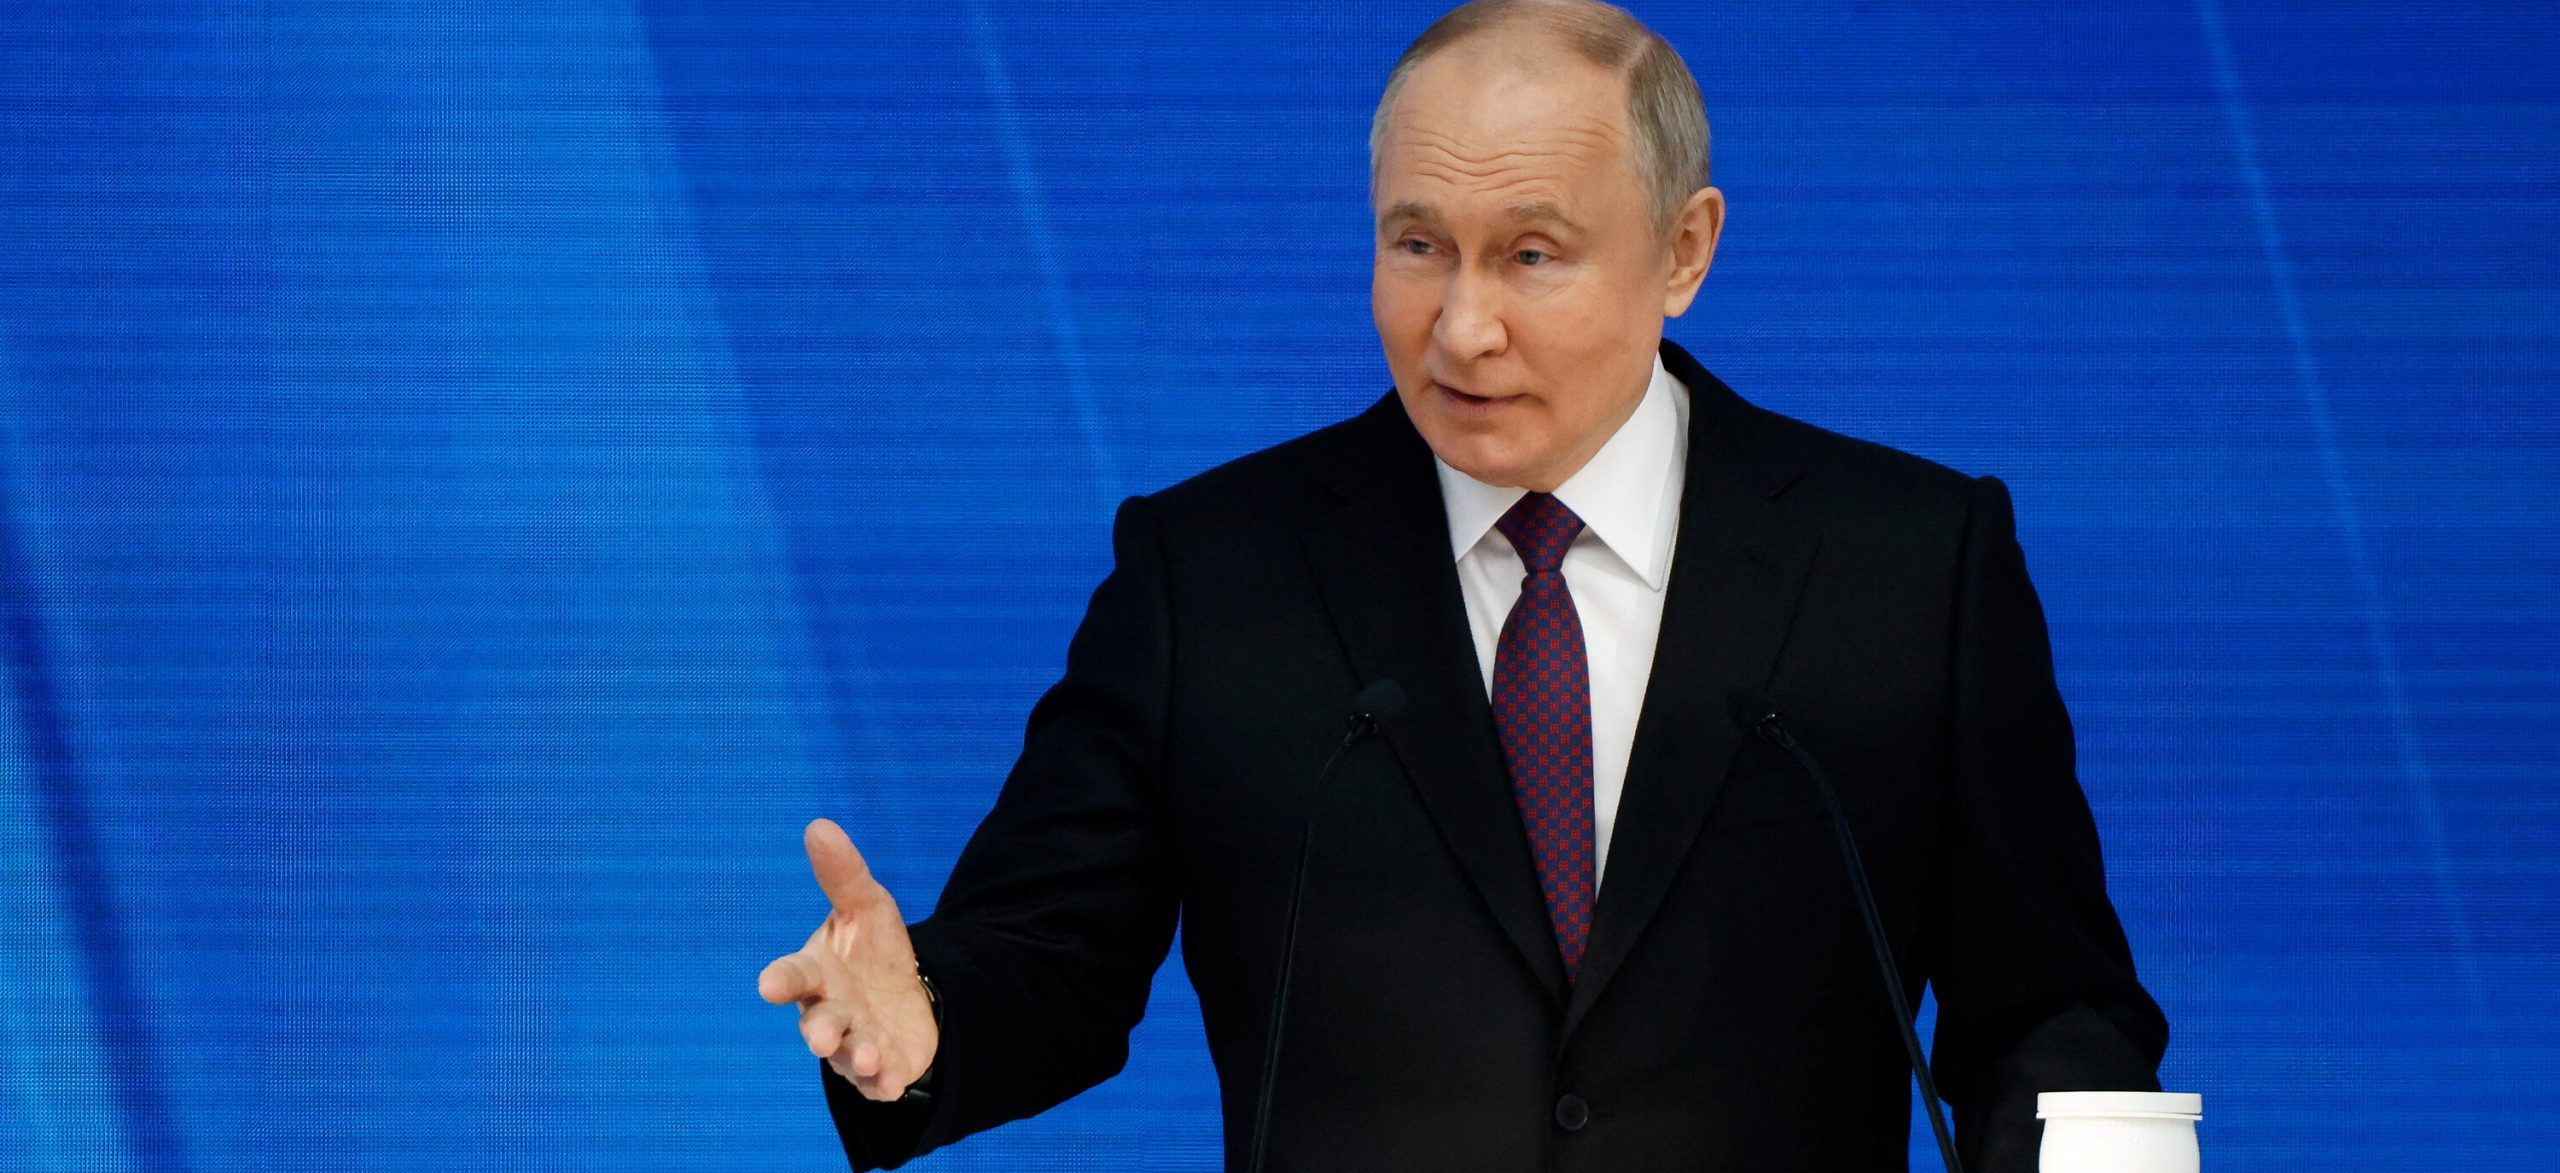 रूसी राष्ट्रपतीय निर्वाचन : पुटिनसँग प्रतिस्पर्धा गर्दै तीन नयाँ अनुहार